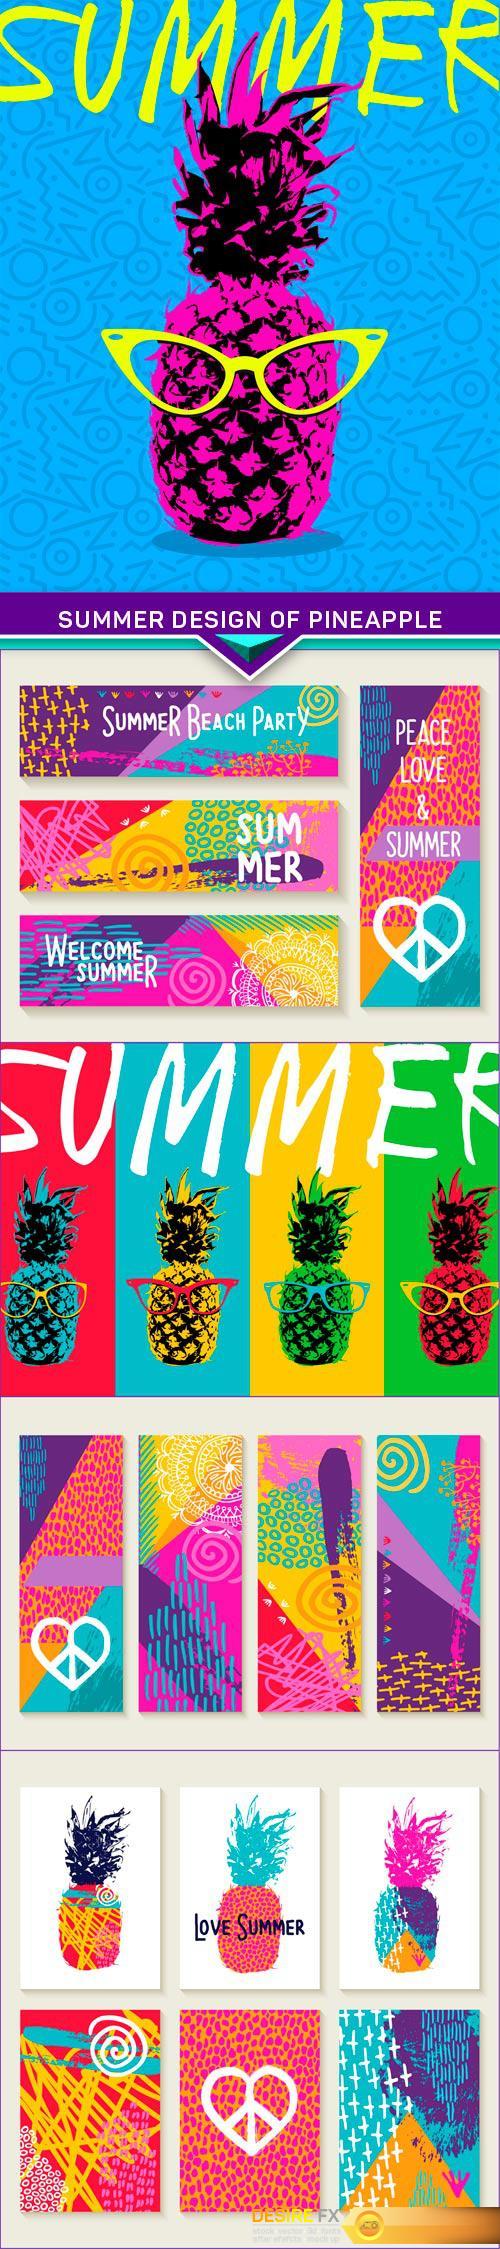 Summer design of pineapple 5x EPS